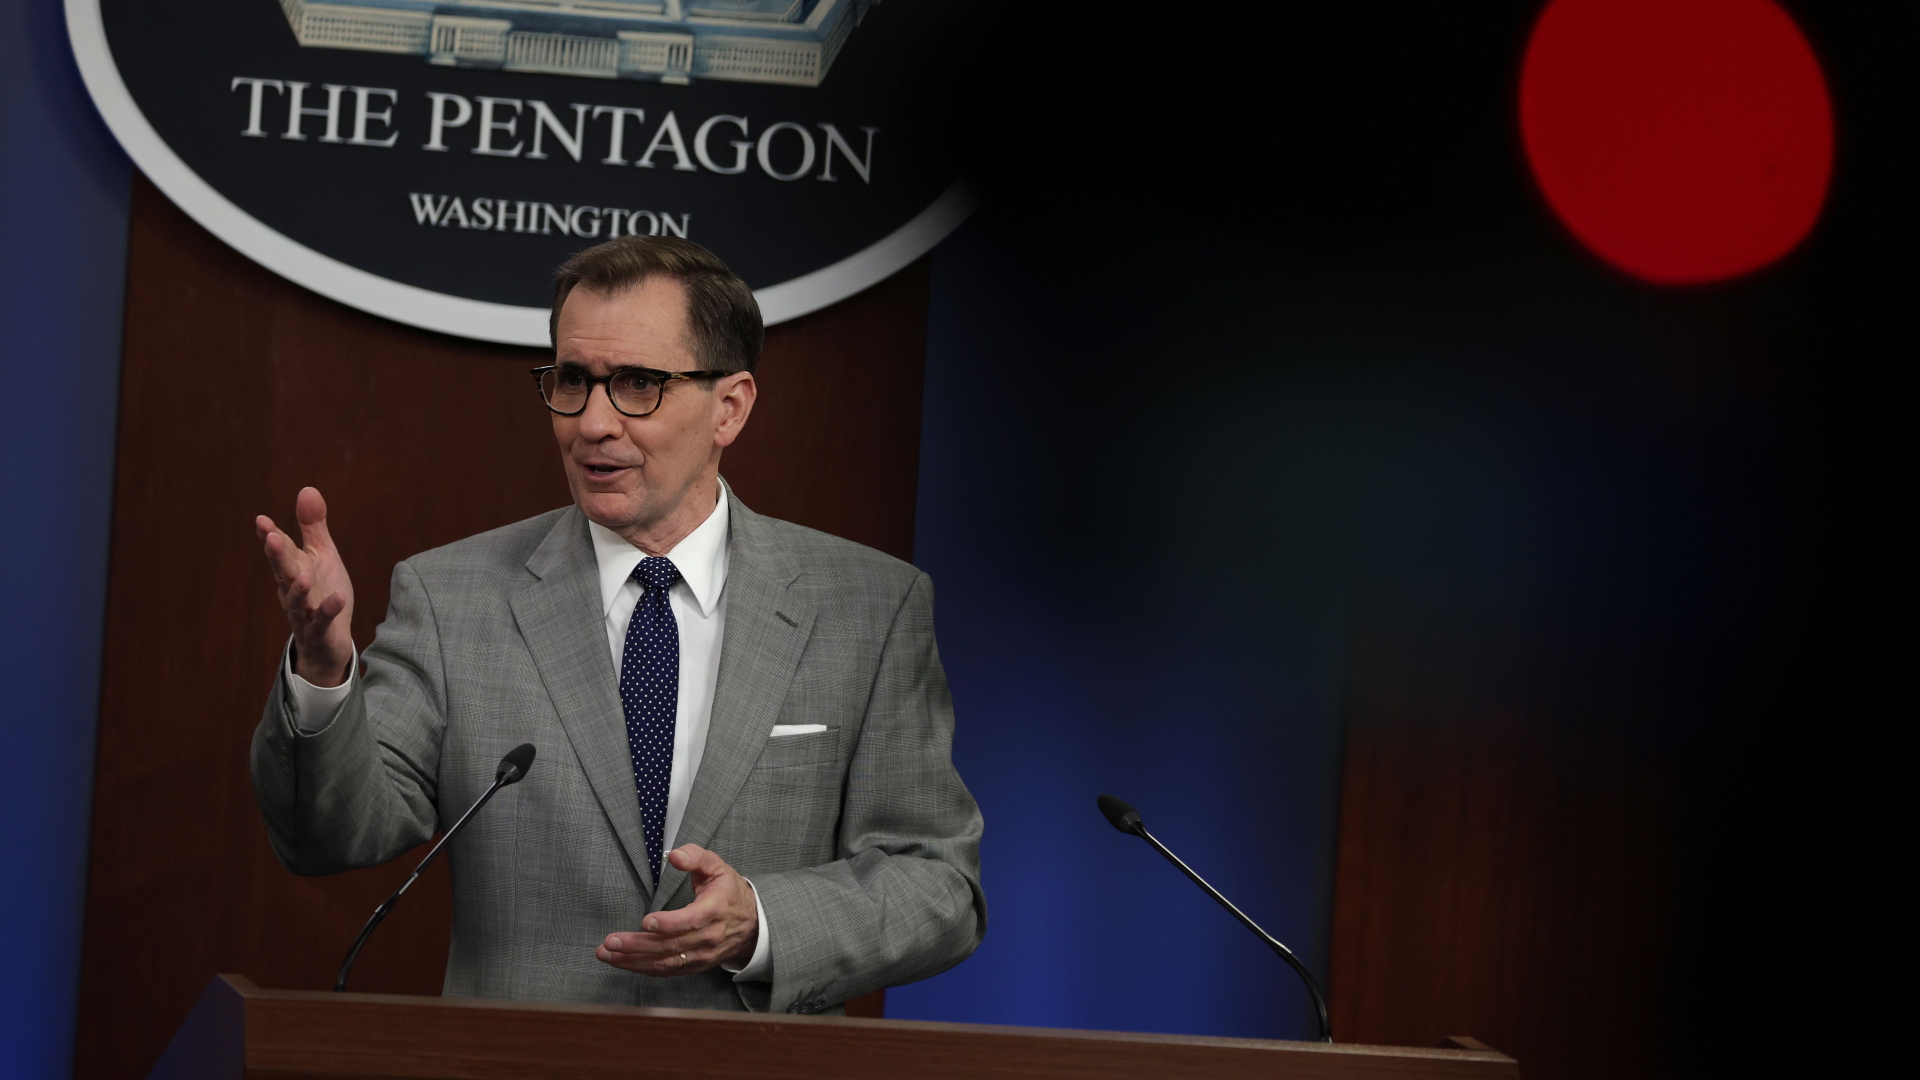 Der Sprecher des US-Pentagons, Kirby. | AFP